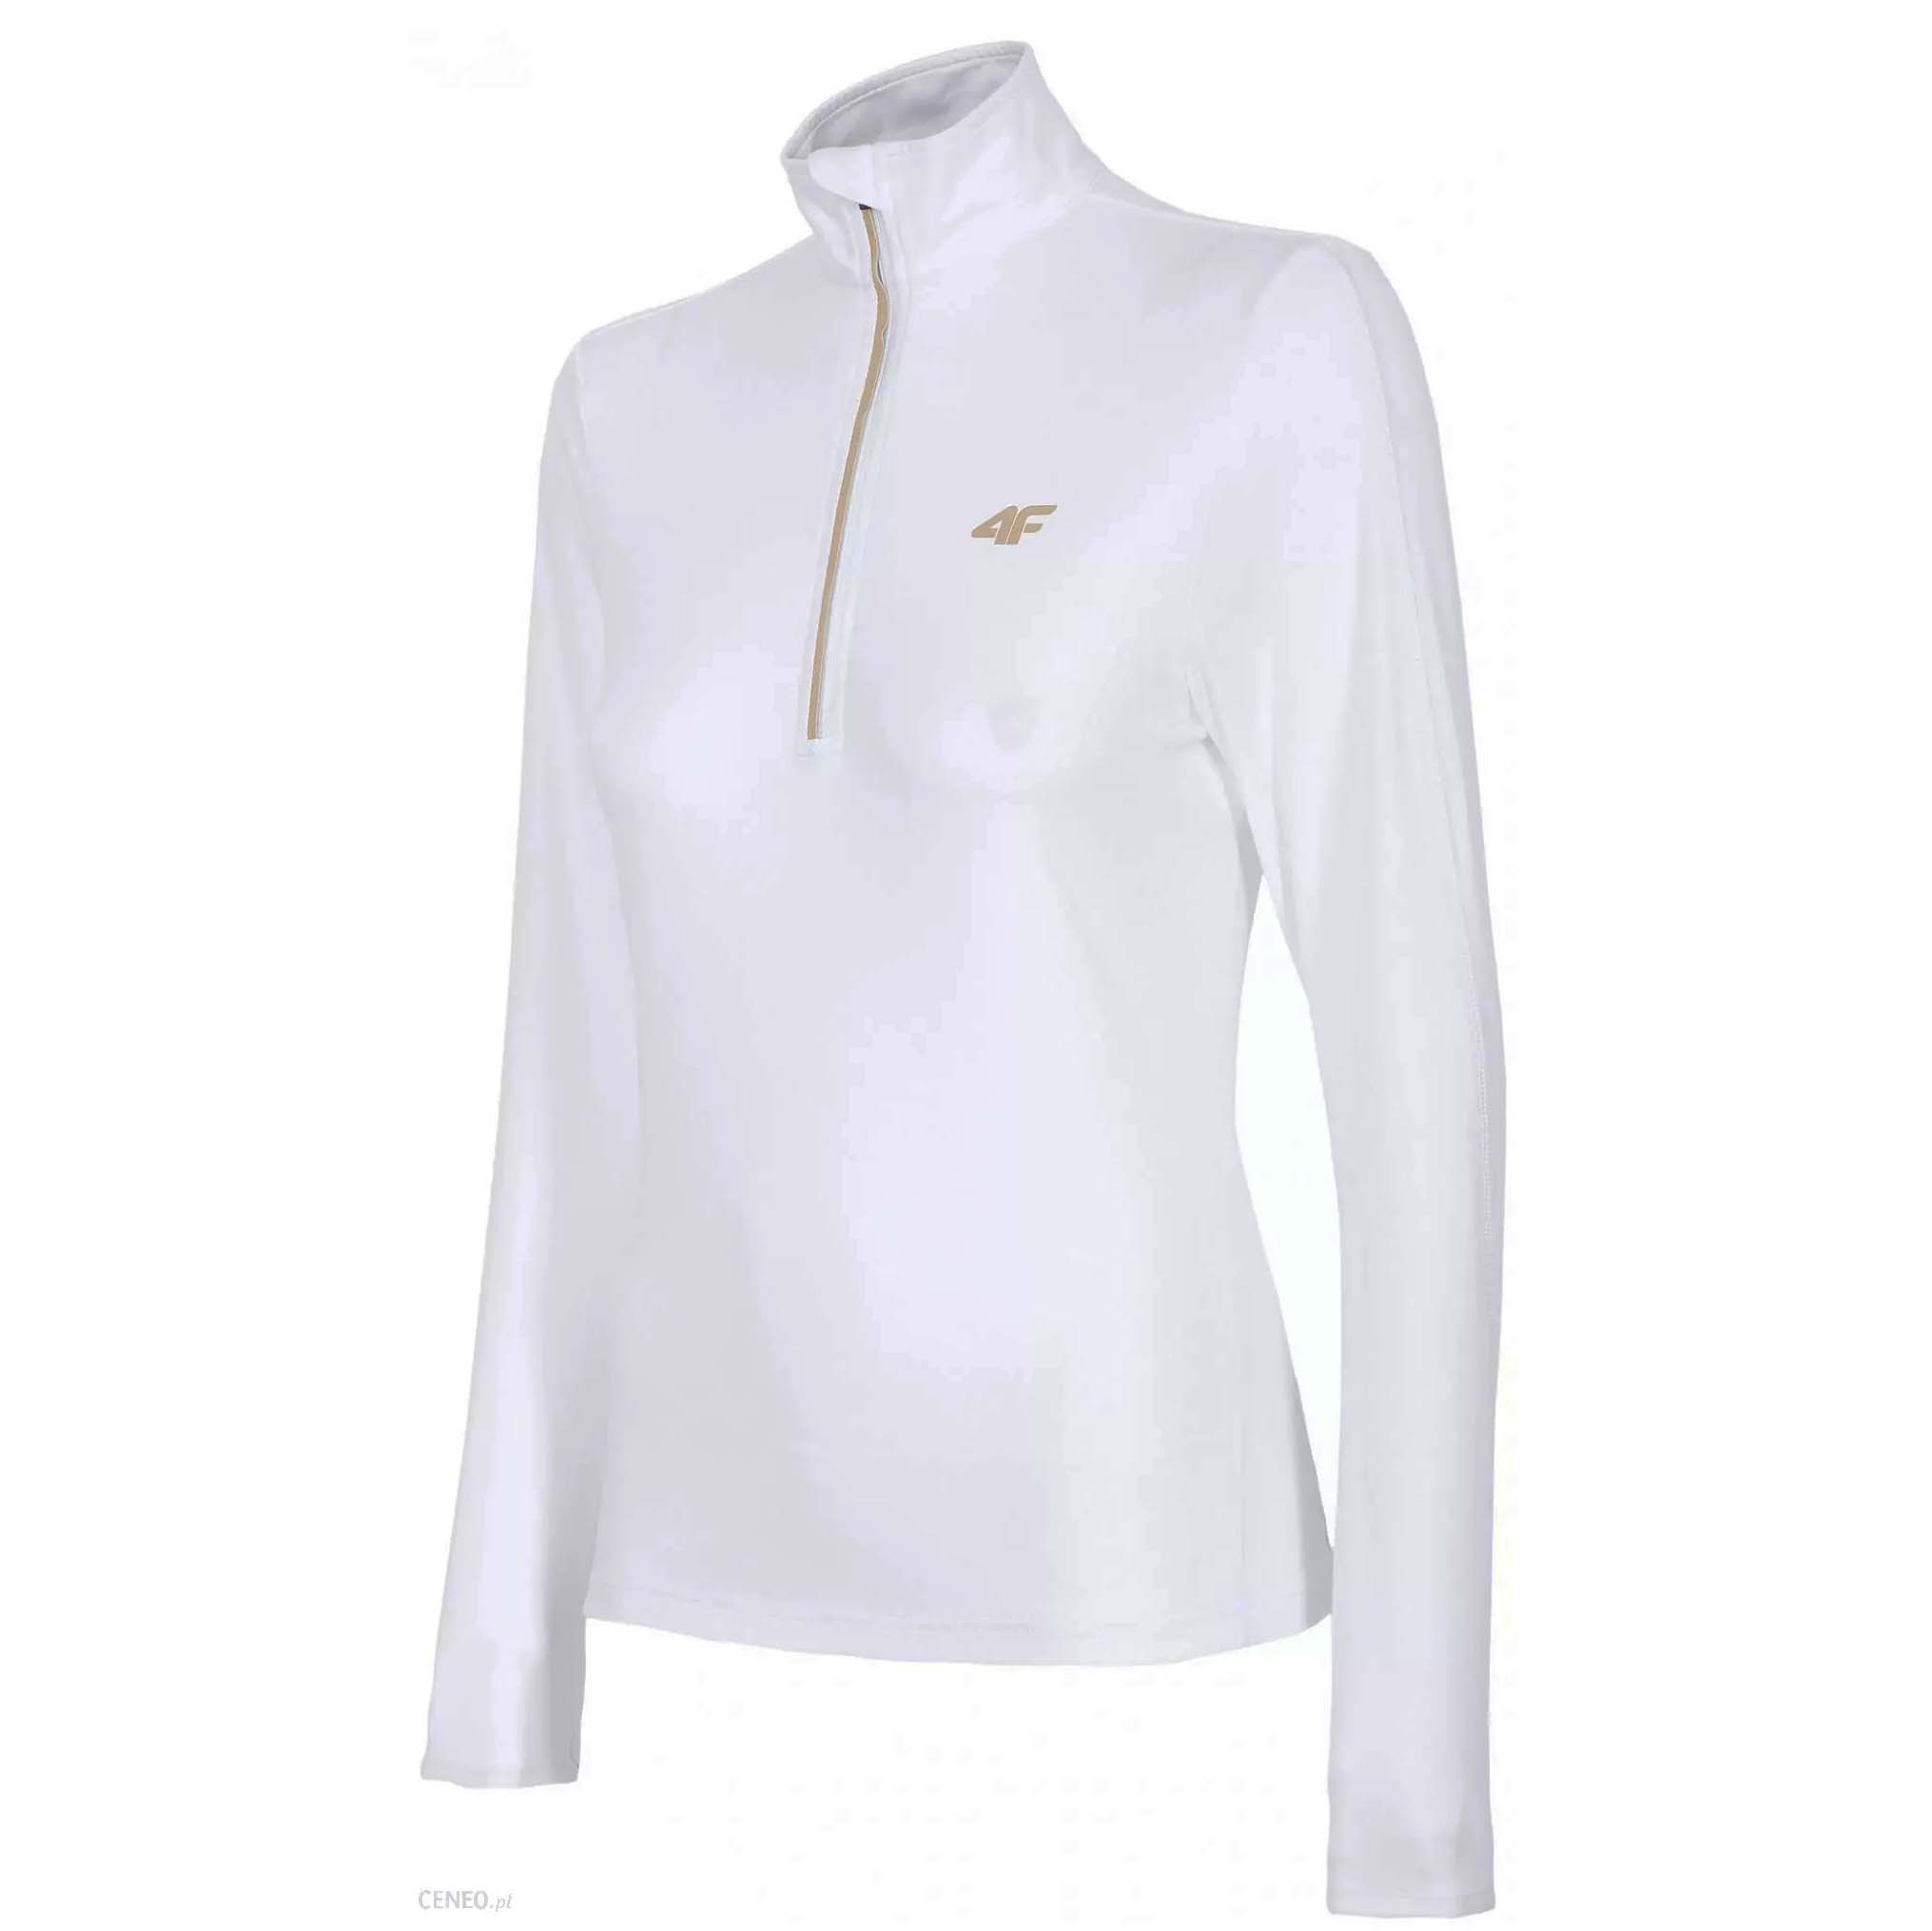 ΕΝΔΥΣΗ 4F Ισοθερμικό γυναικείο μπλουζάκι-Λευκό